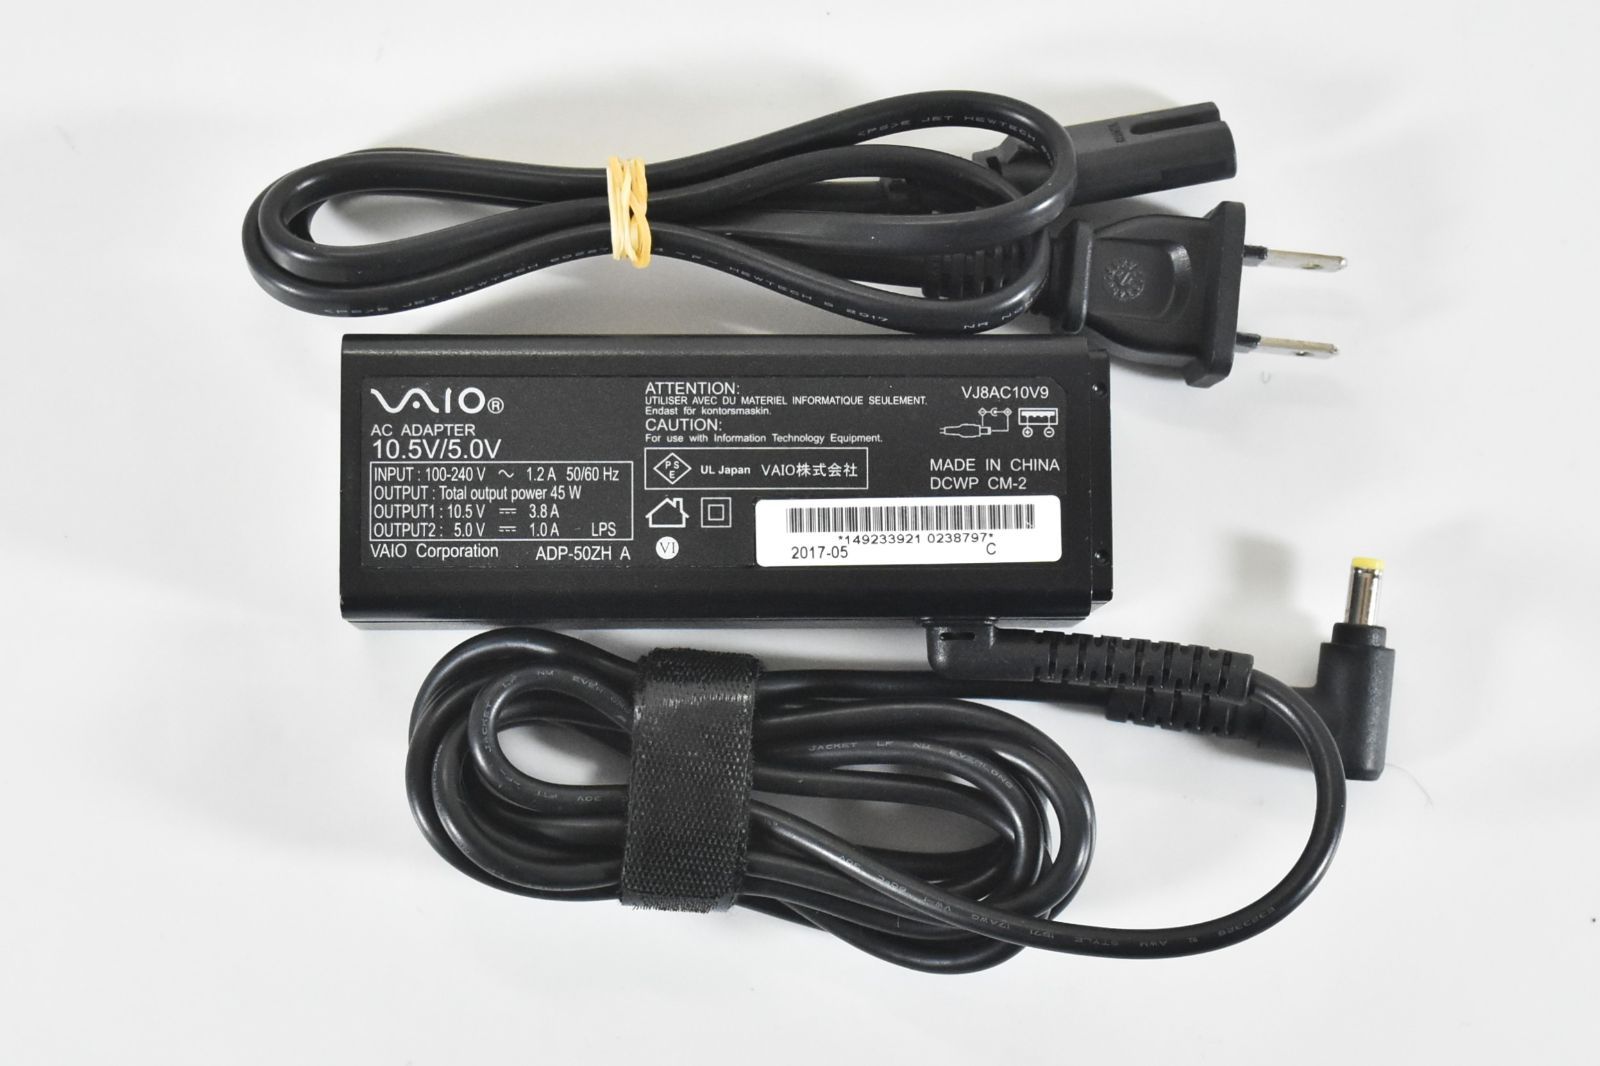 純正 SONY VAIO 10.5V 3.8A ACアダプター/VJ8AC10V9 /45W /外径4.7mm x 内径1.7mm/動作確認済み/中古品  - メルカリ